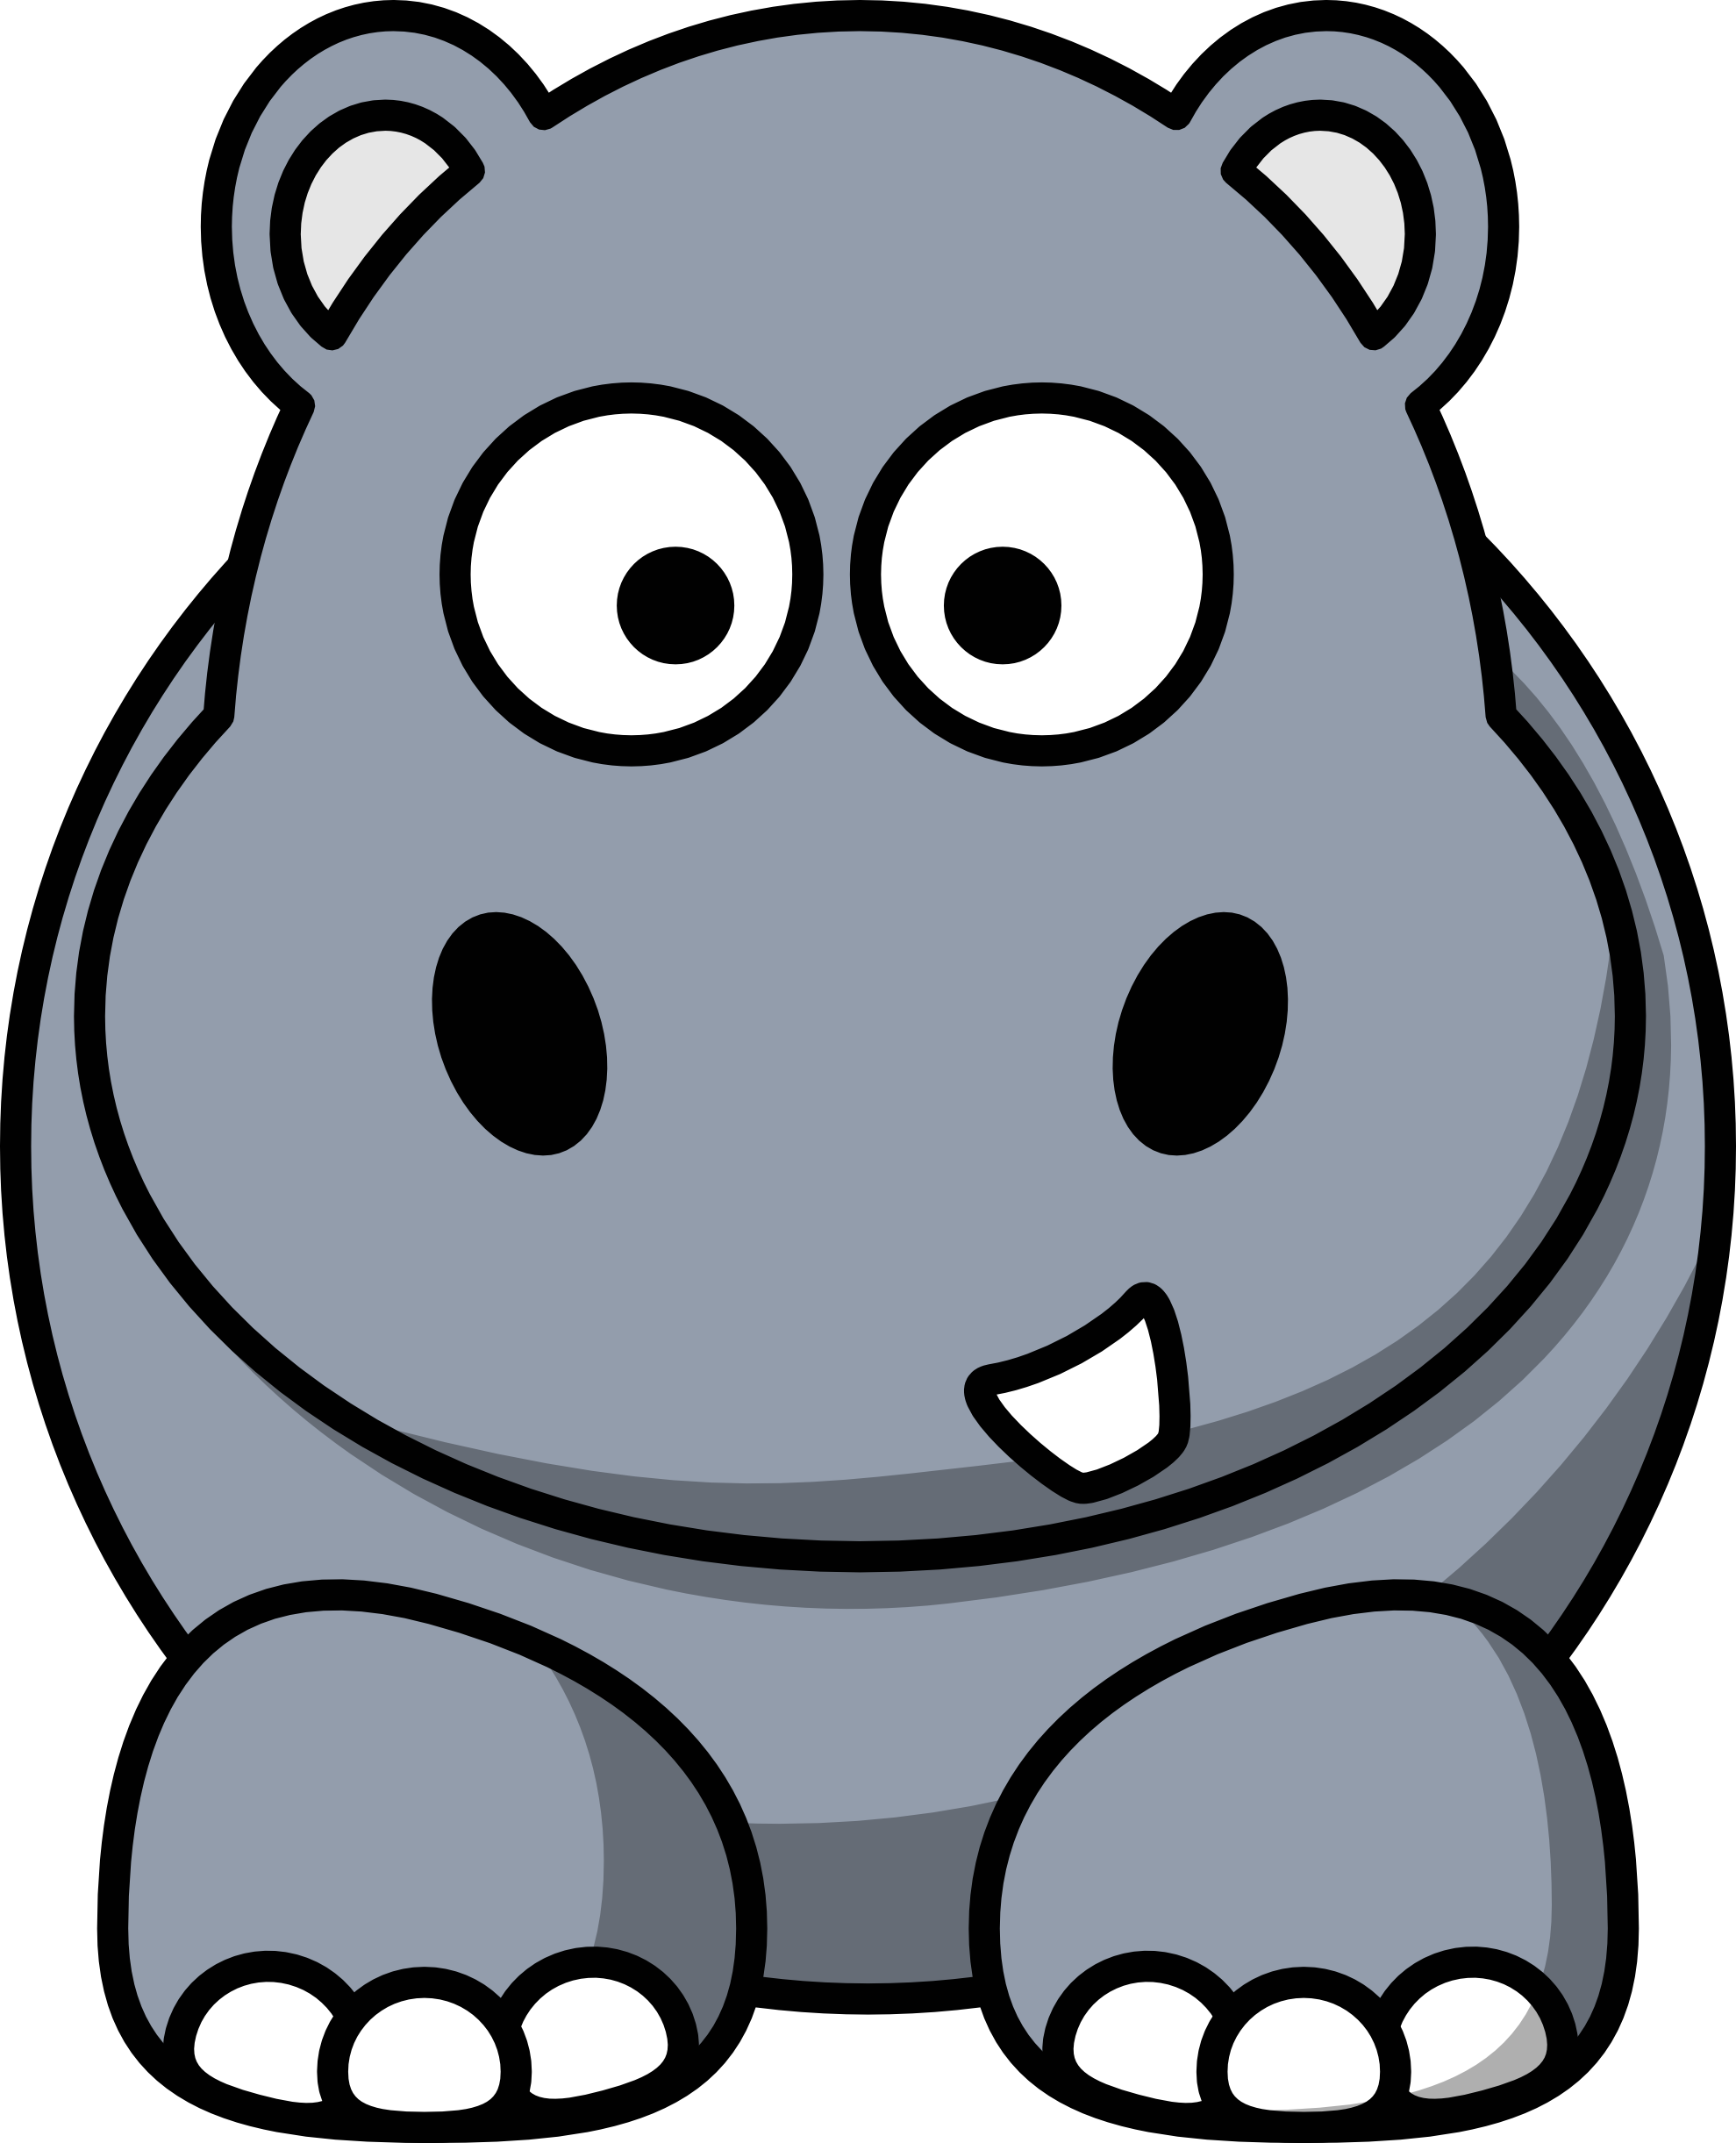 Cartoon hippo clipart image